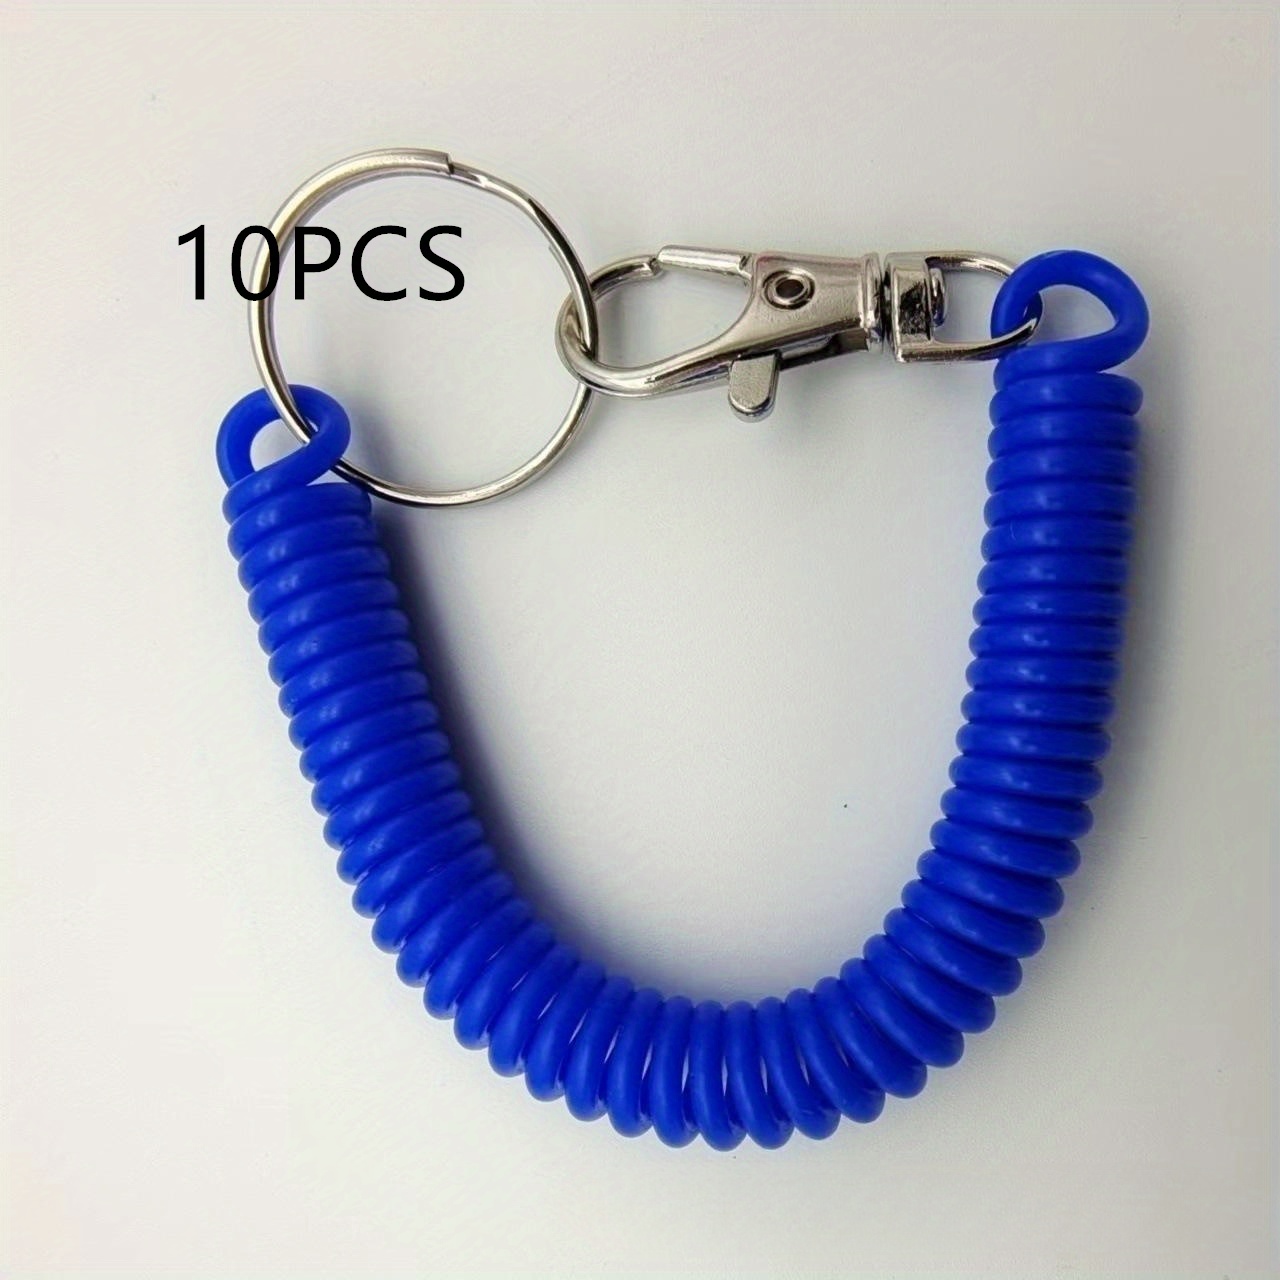 10 PCS Spring Coil Bracelet Wrist Coil Keychain Plastic Spiral Keychain  Coil Bracelet - Metal Key Ring Bracelet Holder Key Chain Colorful Spiral  Wrist